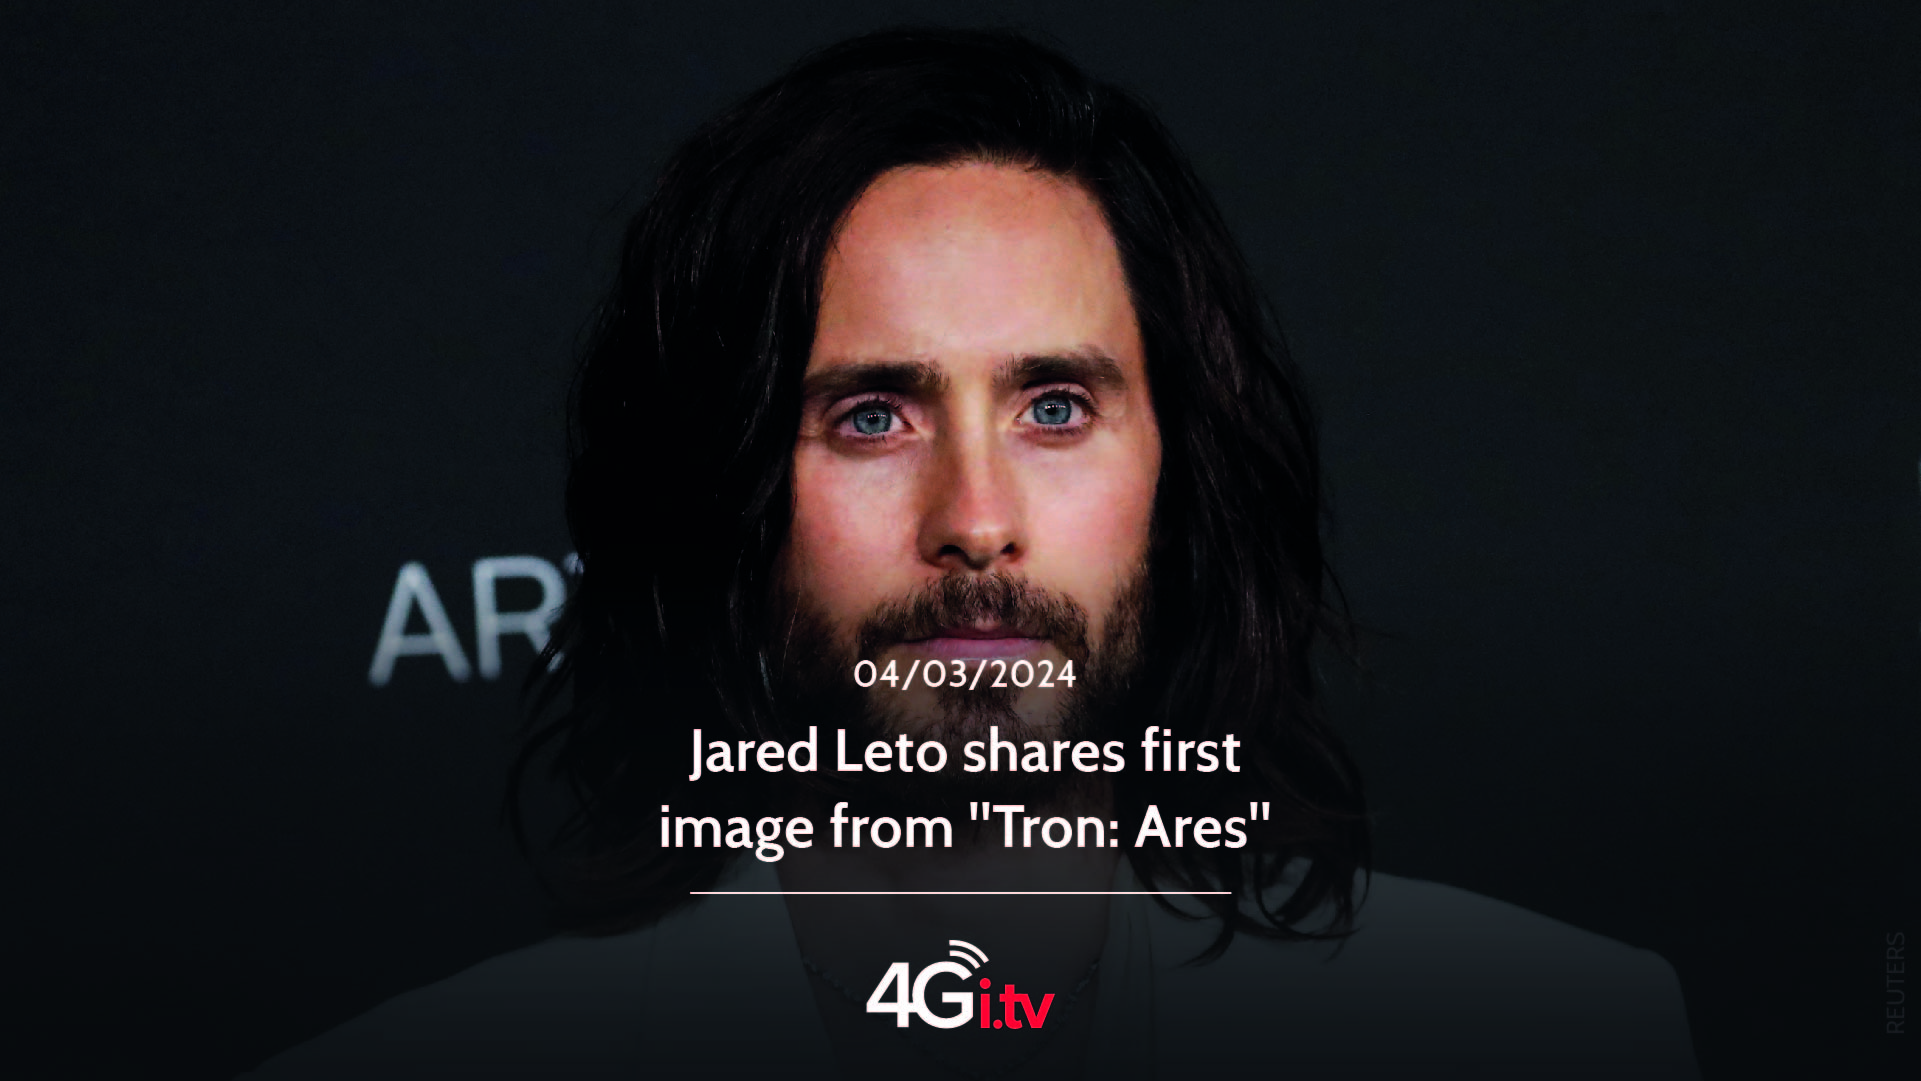 Lesen Sie mehr über den Artikel Jared Leto shares first image from “Tron: Ares”